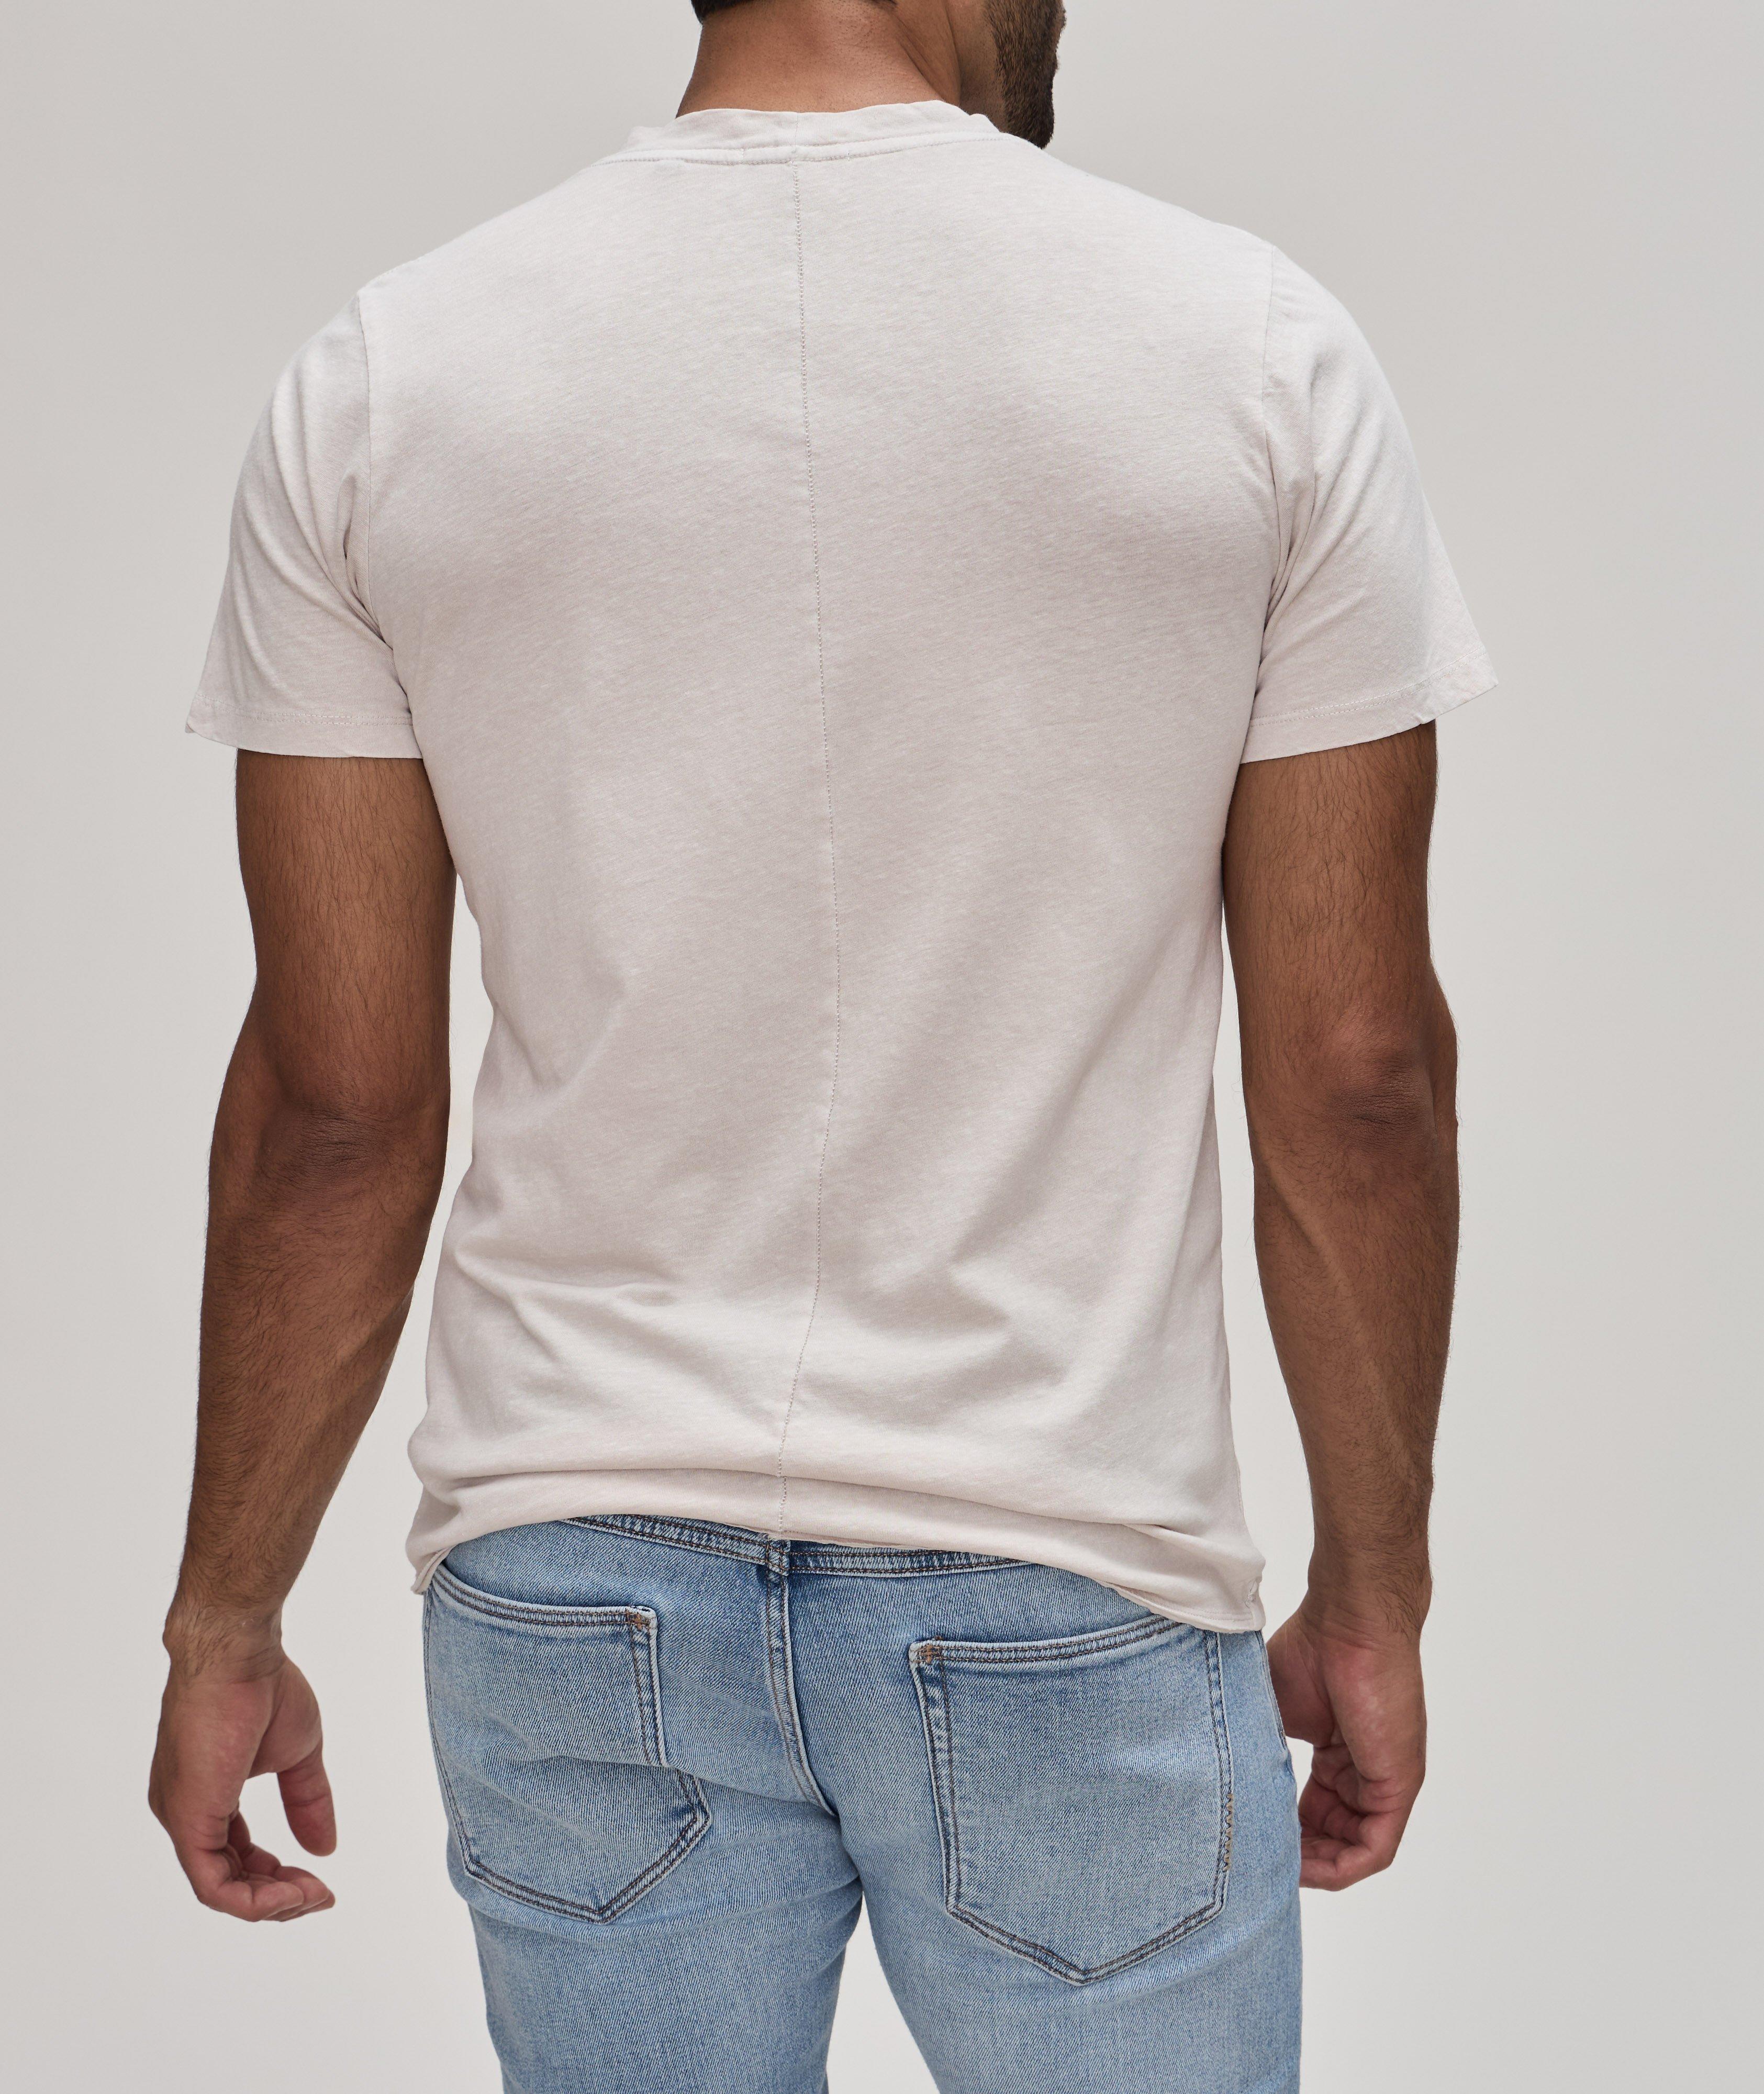 Cotton-Linen Layer T-Shirt